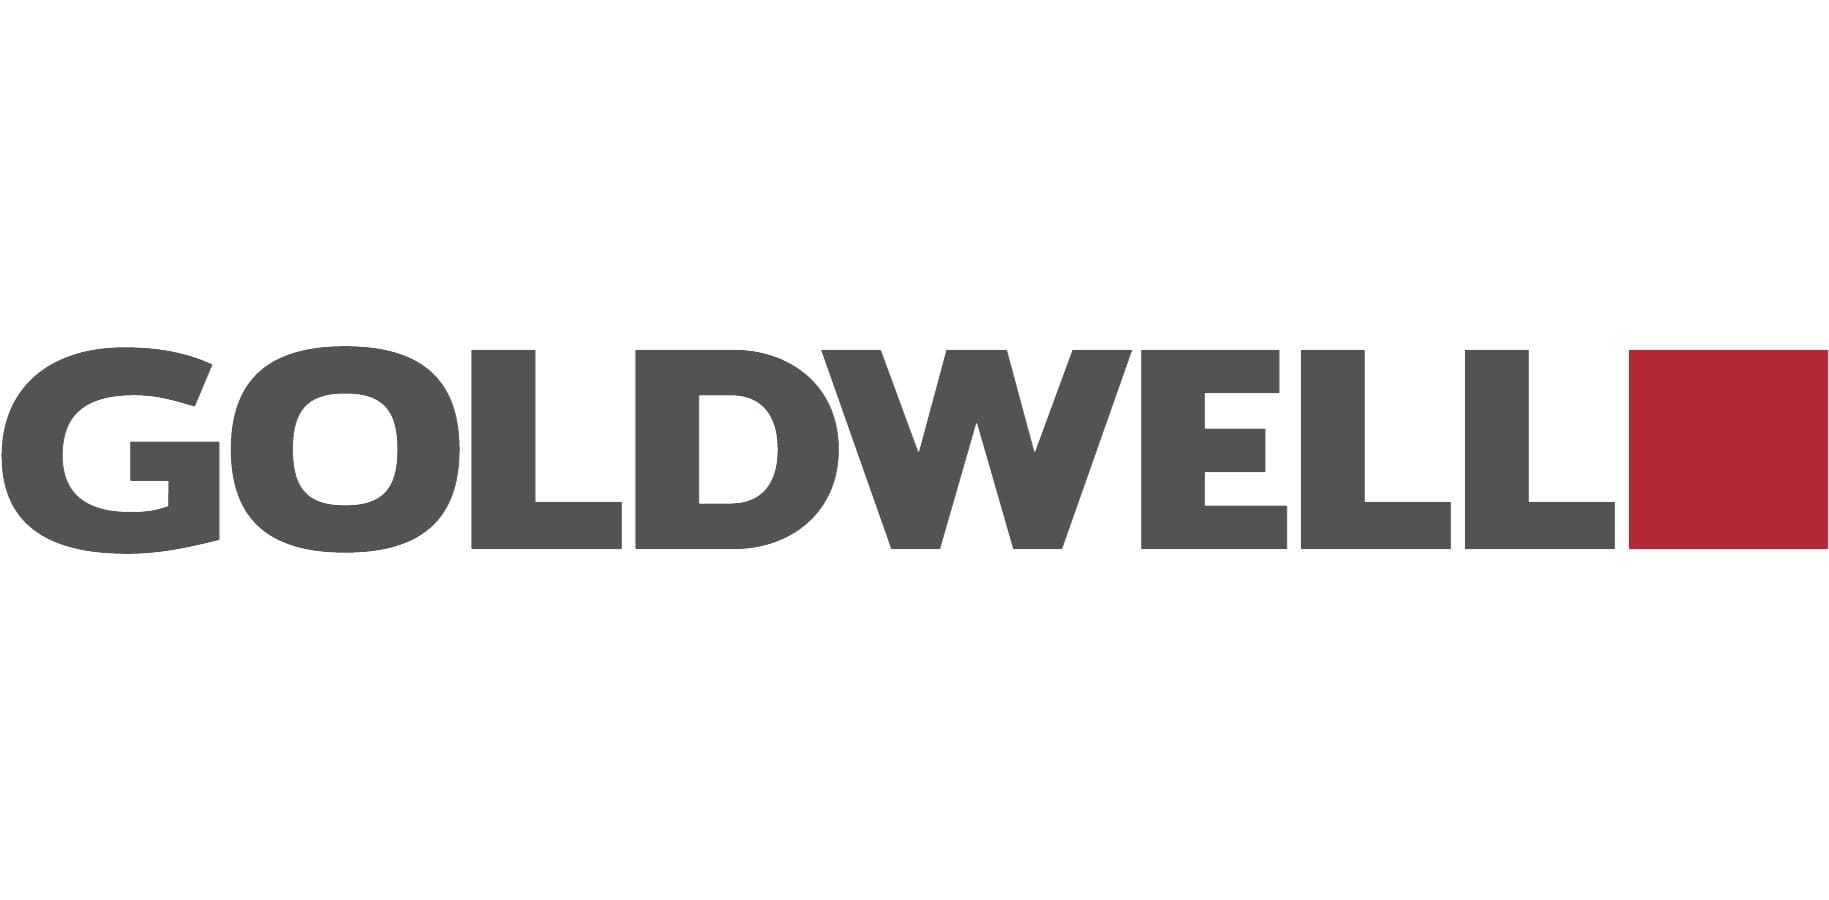 Mẫu thiết kế logo thương hiệu công ty GOLDWELL 4